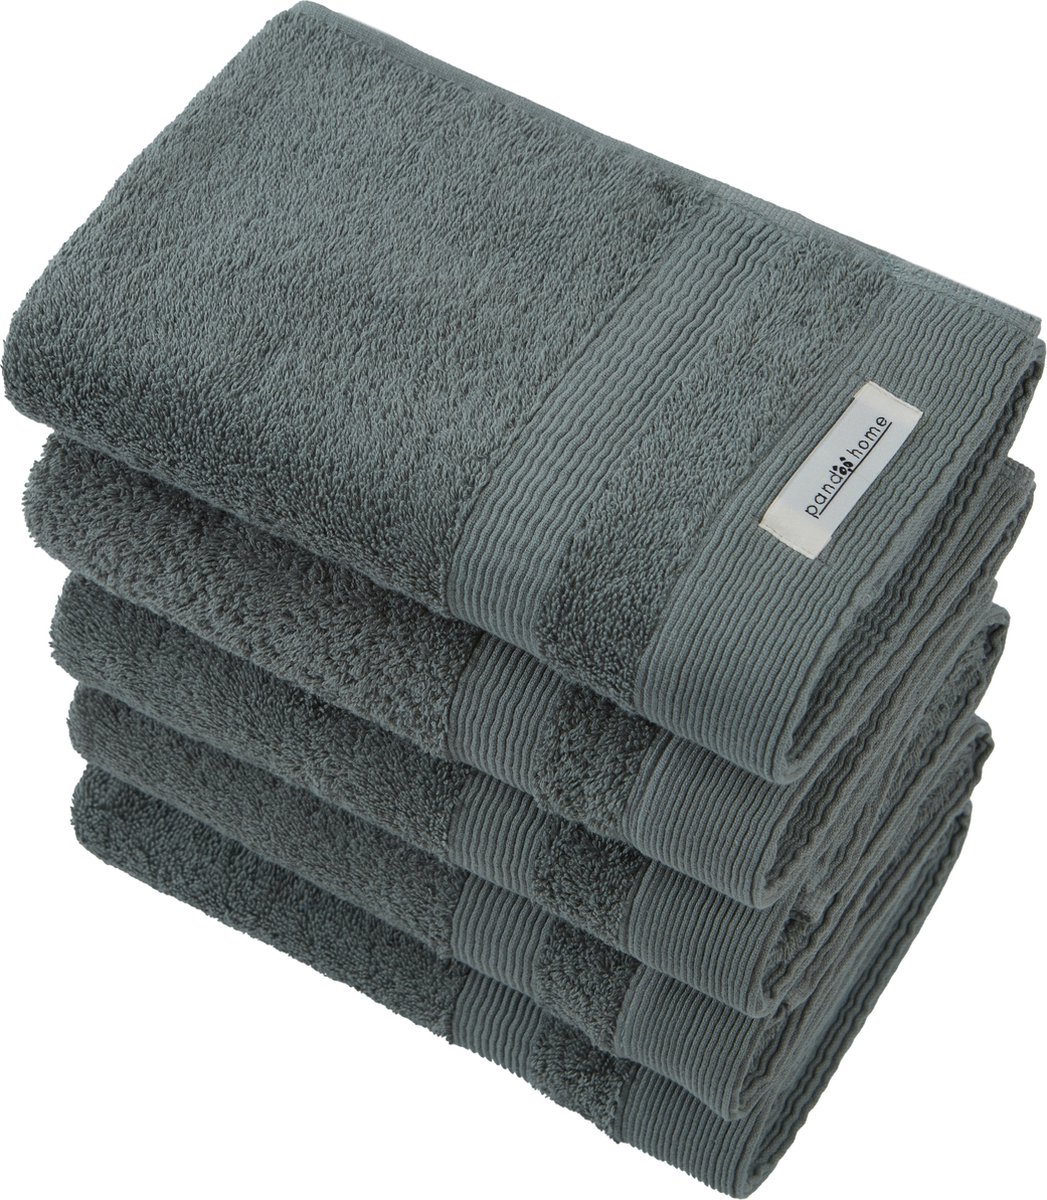 PandaHome - Handdoek Set - 5-delig - 5 Handdoeken 50x100 cm - 100% Katoen - Groene Handdoek - Gastendoekjes - Army Green